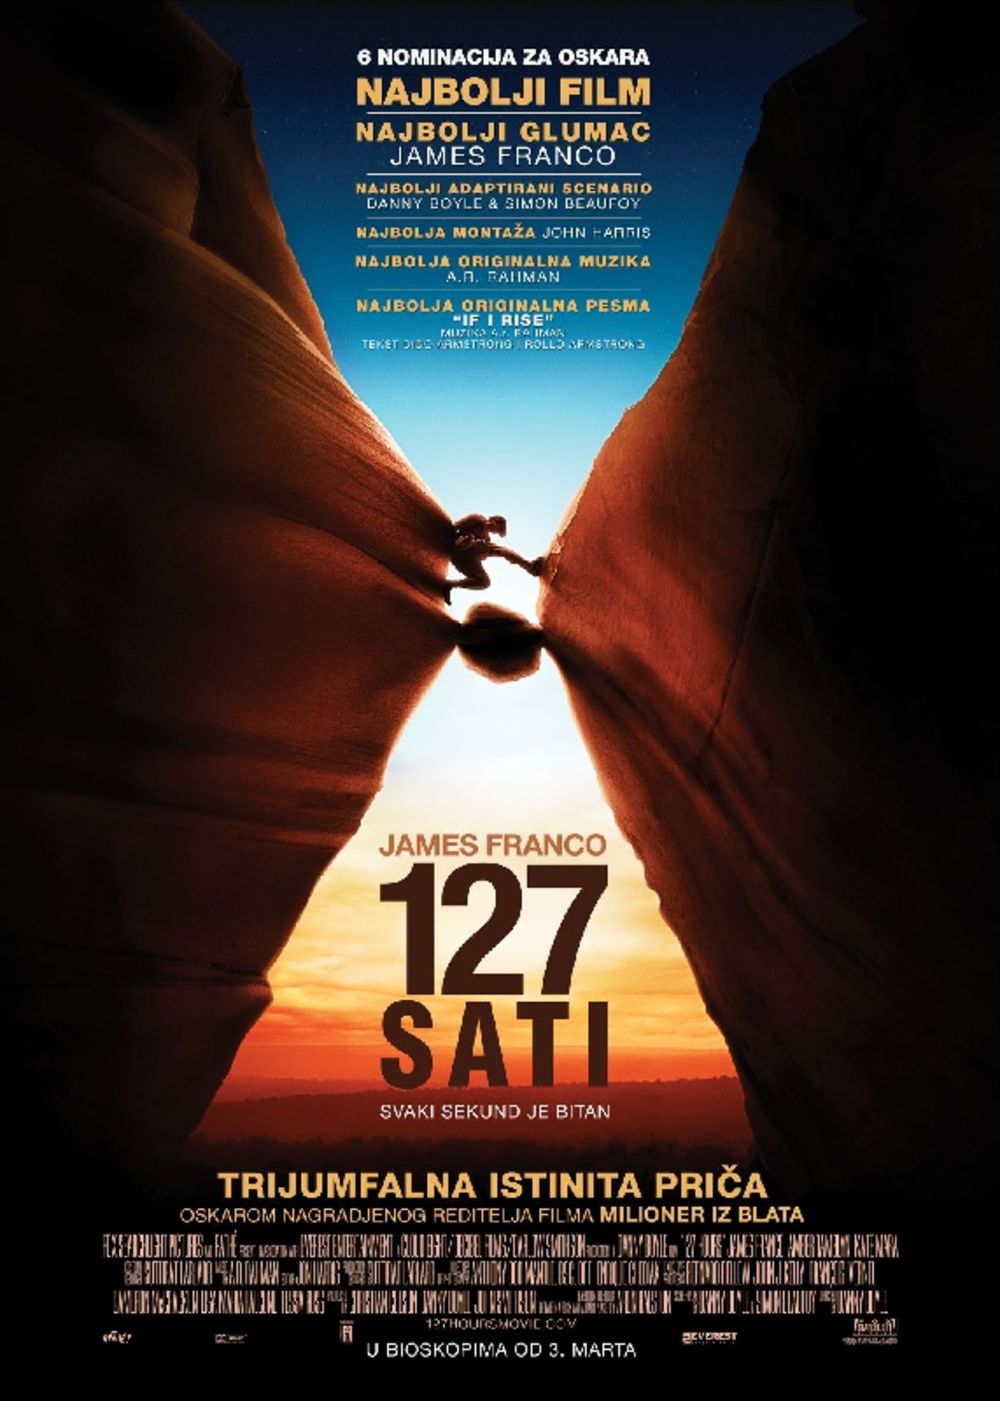 Novo ostvarenje dobitnika Oskara Denija Bojla, 127 sati, snimljeno prema istinitoj priči o neverovatnoj borbi za život  koji se našao zarobljen pod stenom, naći će se na redovnom bioskopskom repertoaru od 3. marta.